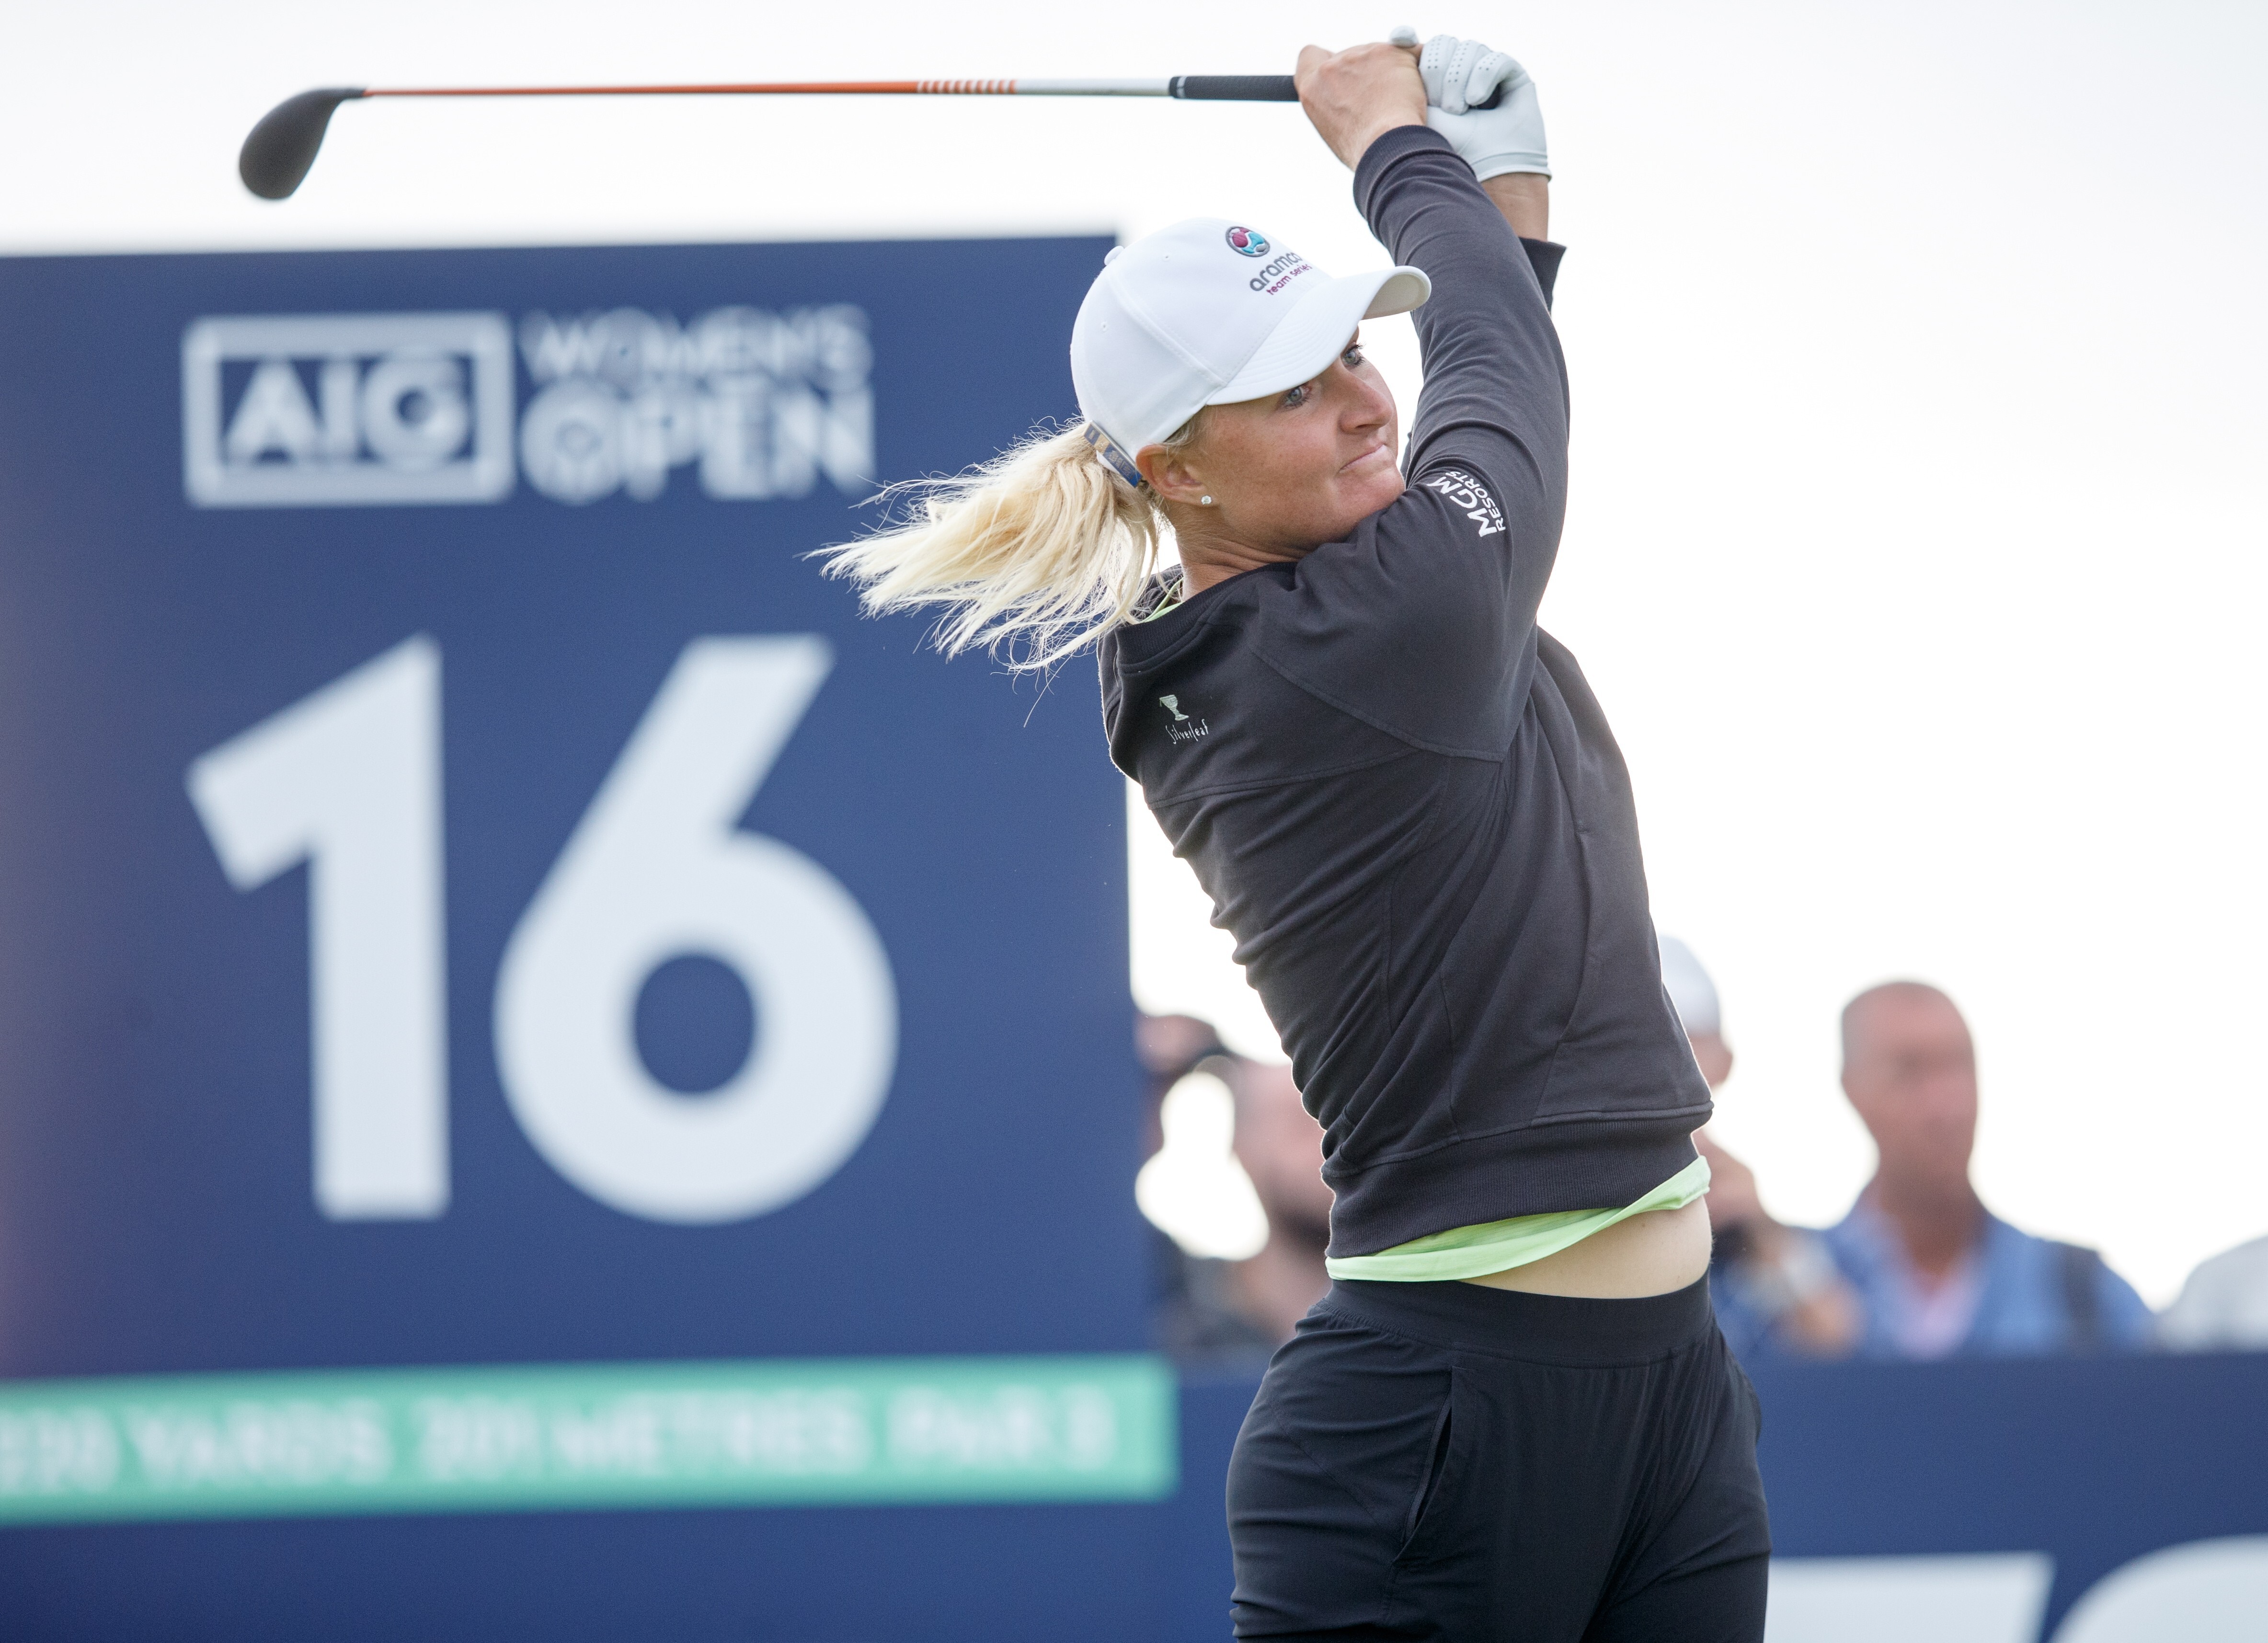 Sweden’s Anna Nordqvist won the Women’s British Open at Carnoustie in Scotland. Photo: EPA